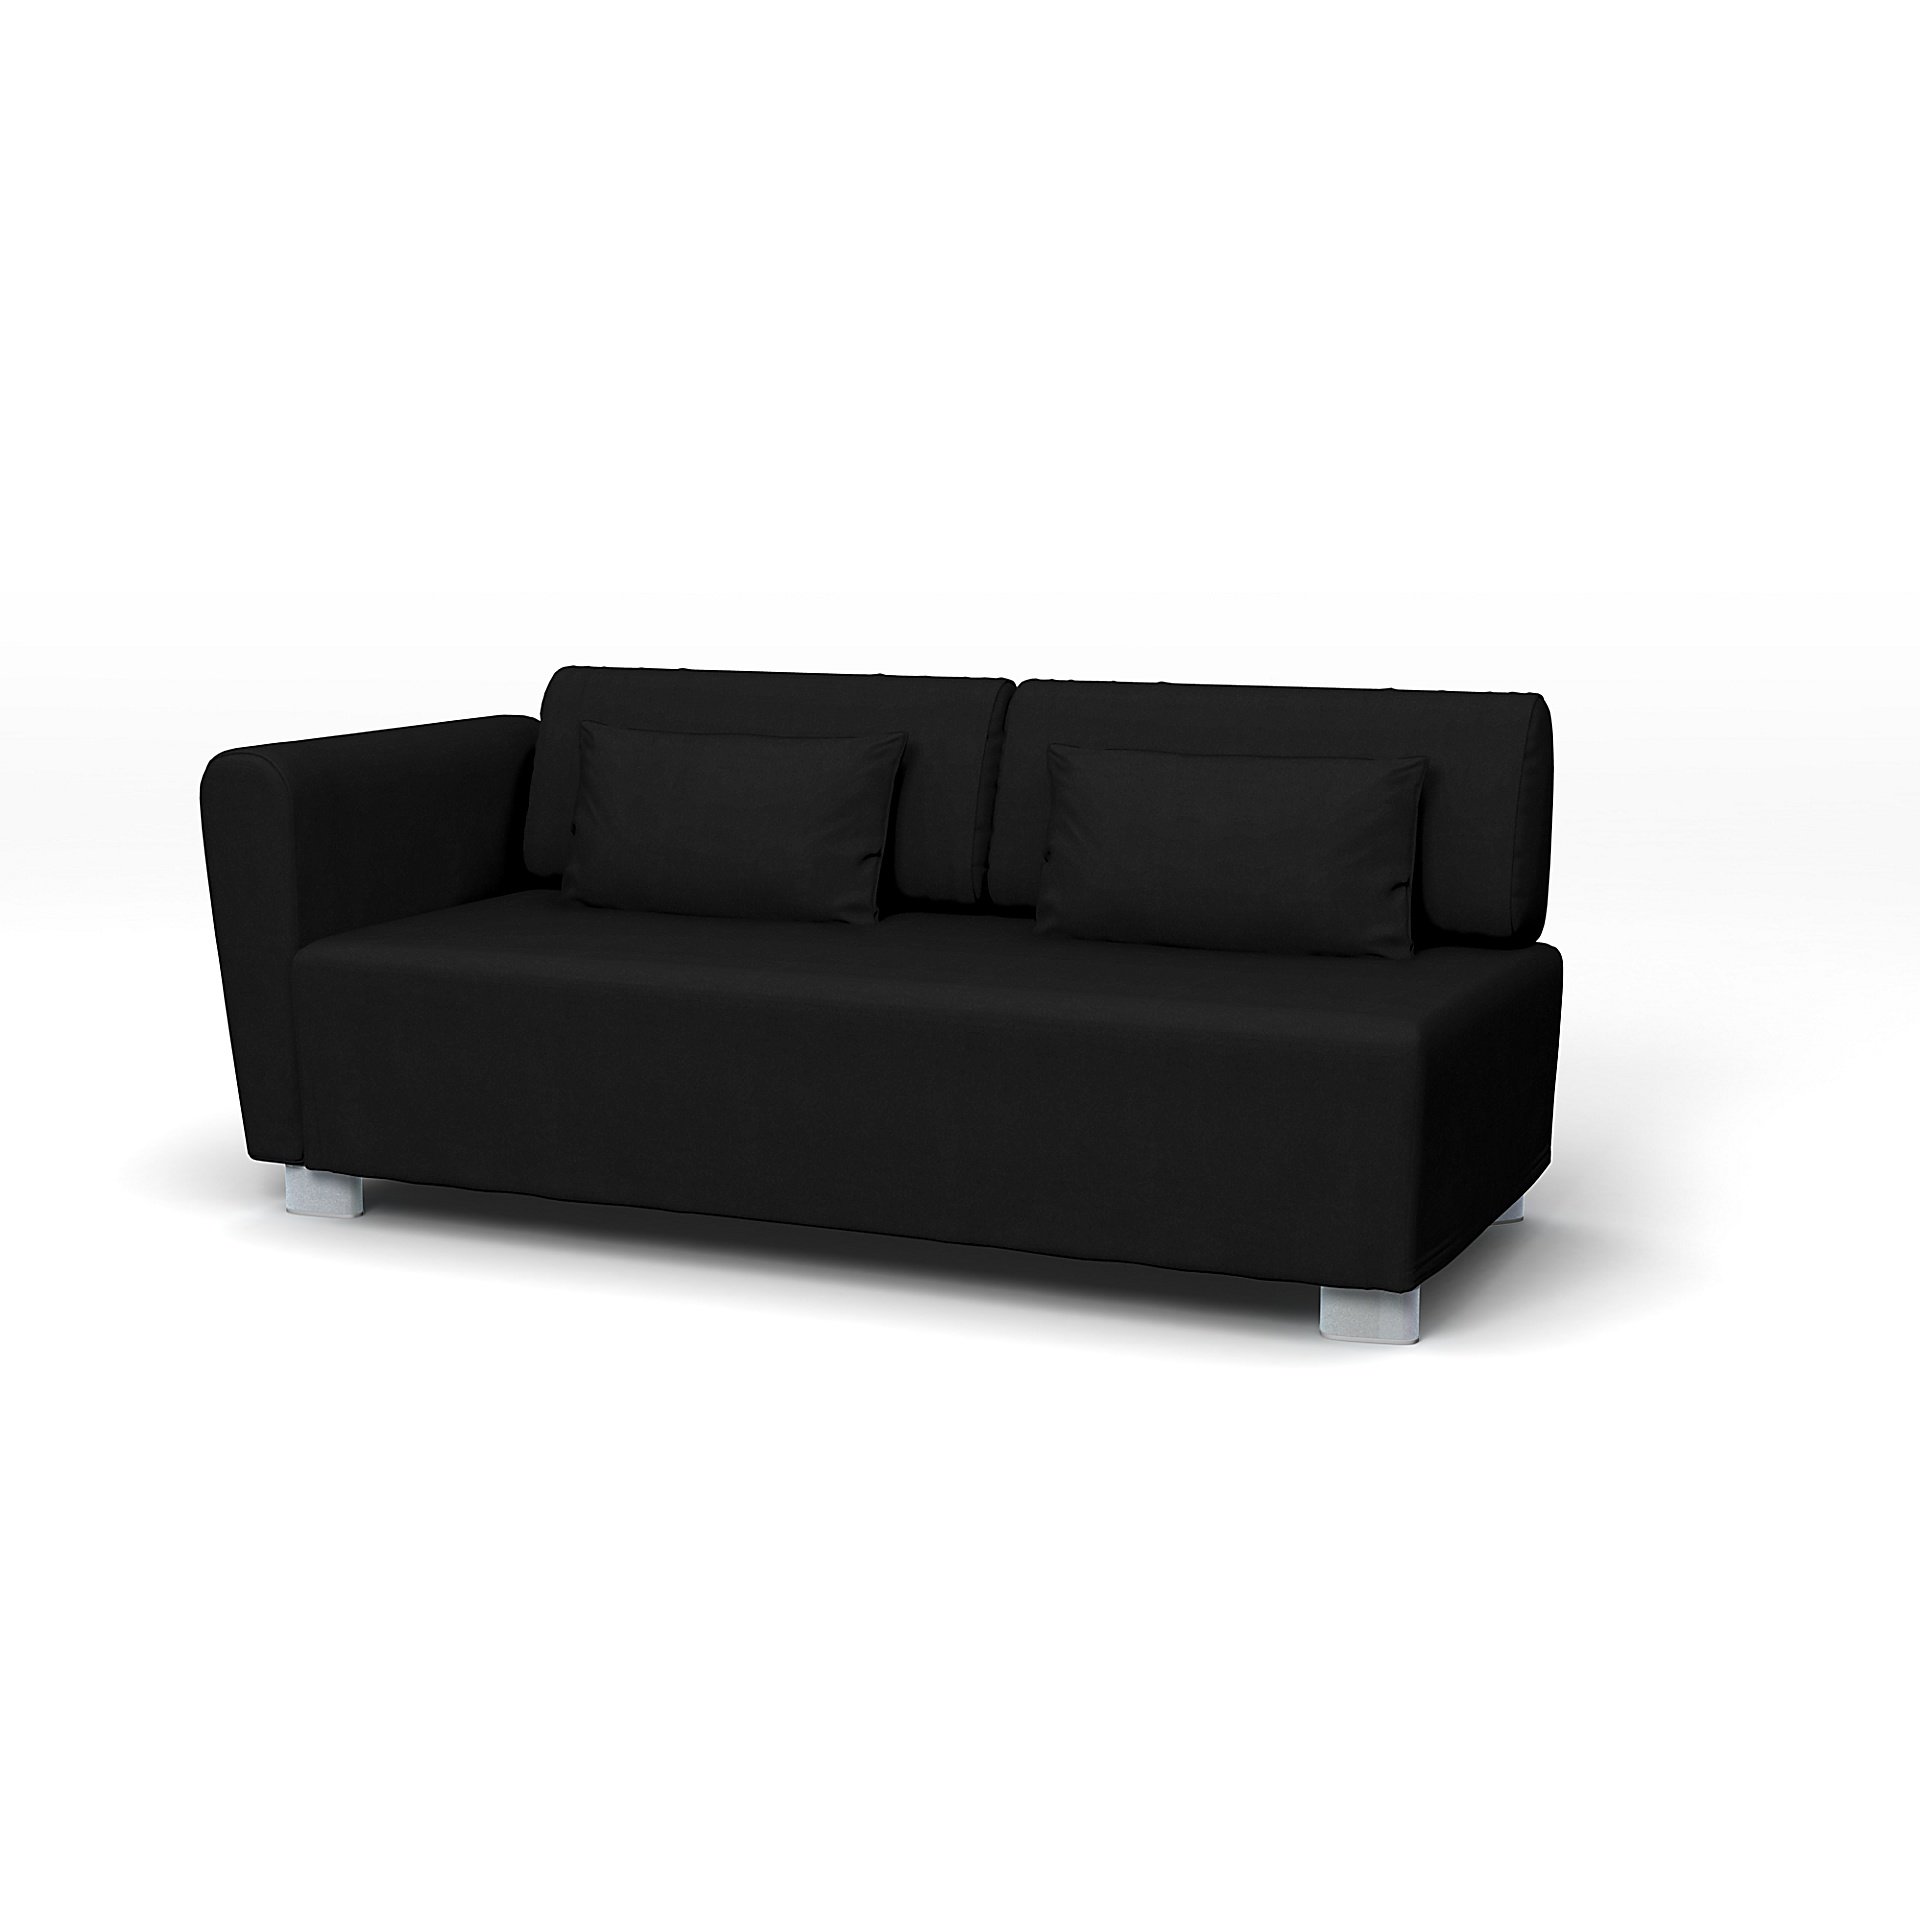 IKEA - Mysinge 2 Seater Sofa with Armrest Cover, Black, Velvet - Bemz